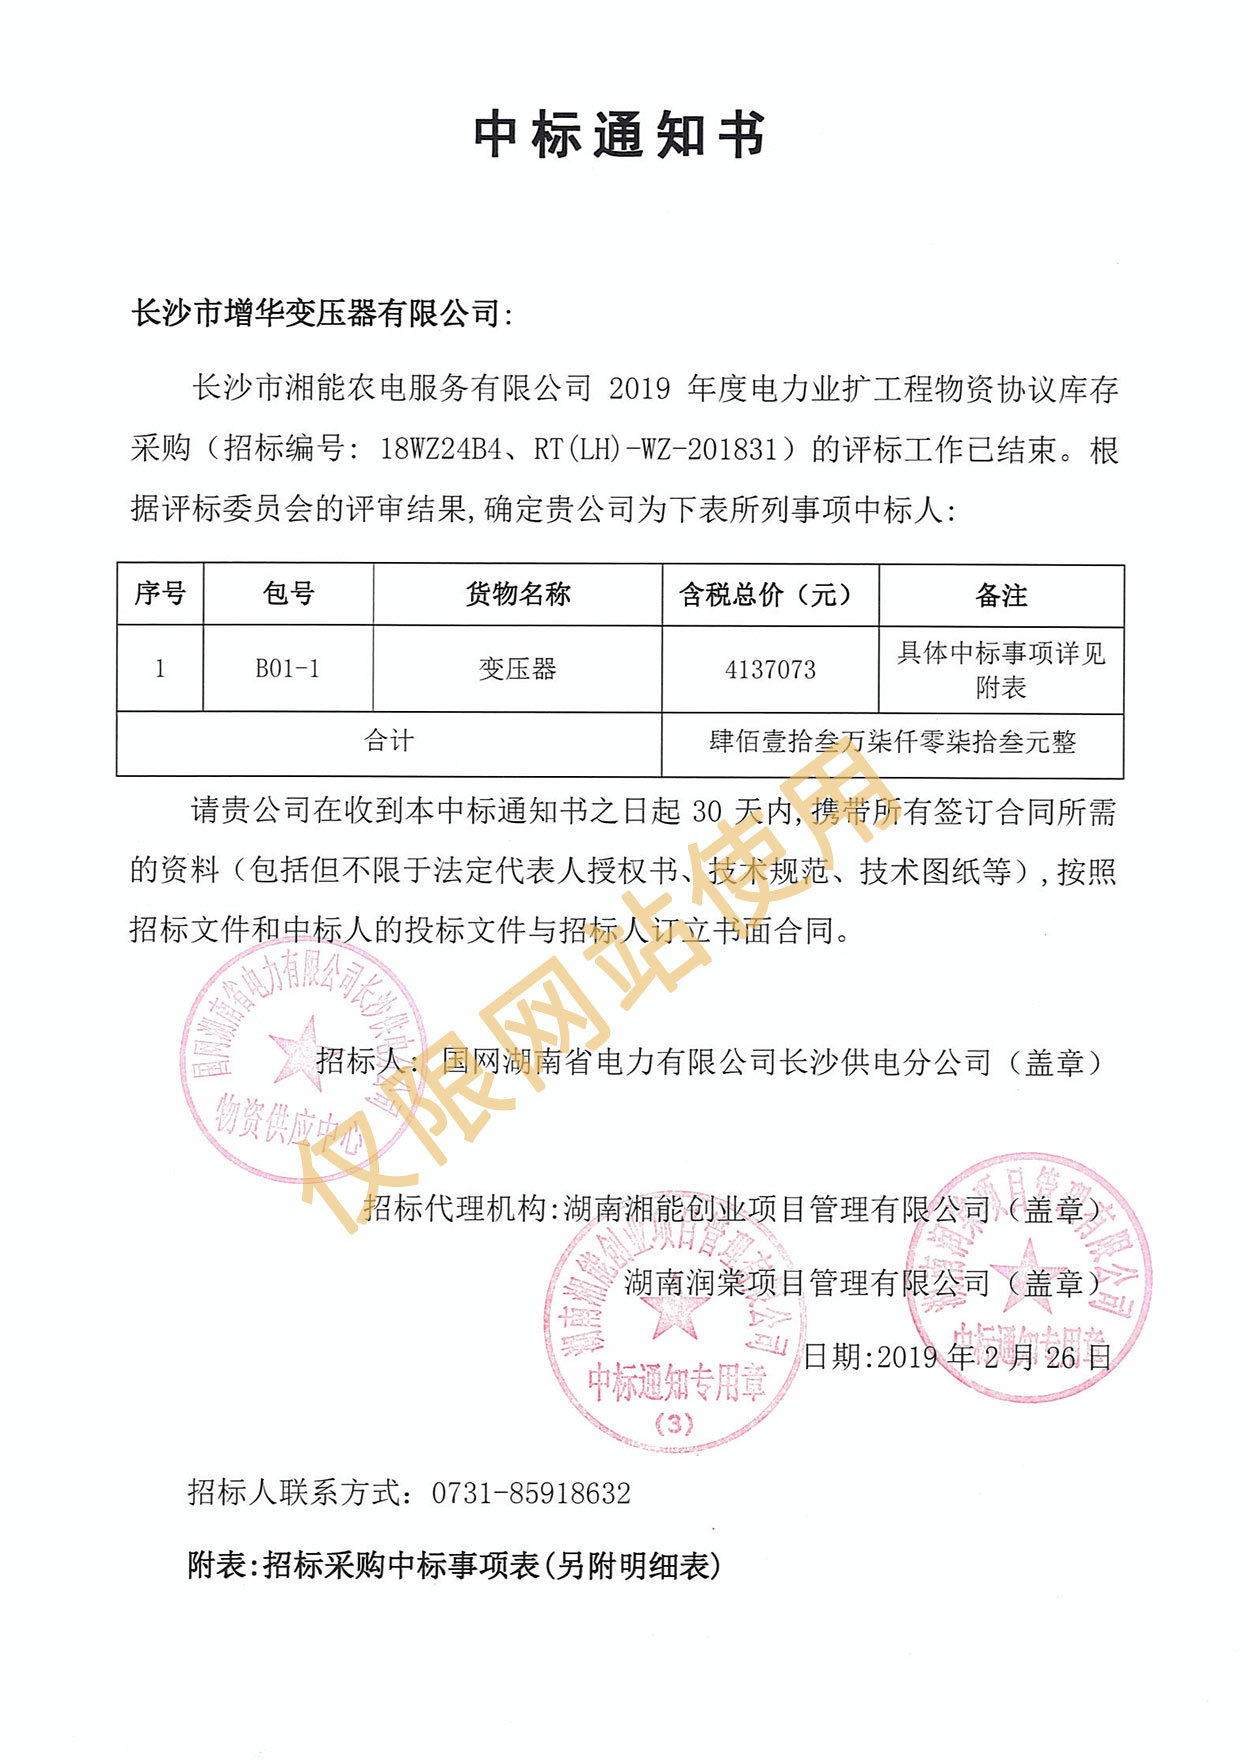 湘能农电服务有限公司2019年度电力业扩工程物资中标通知